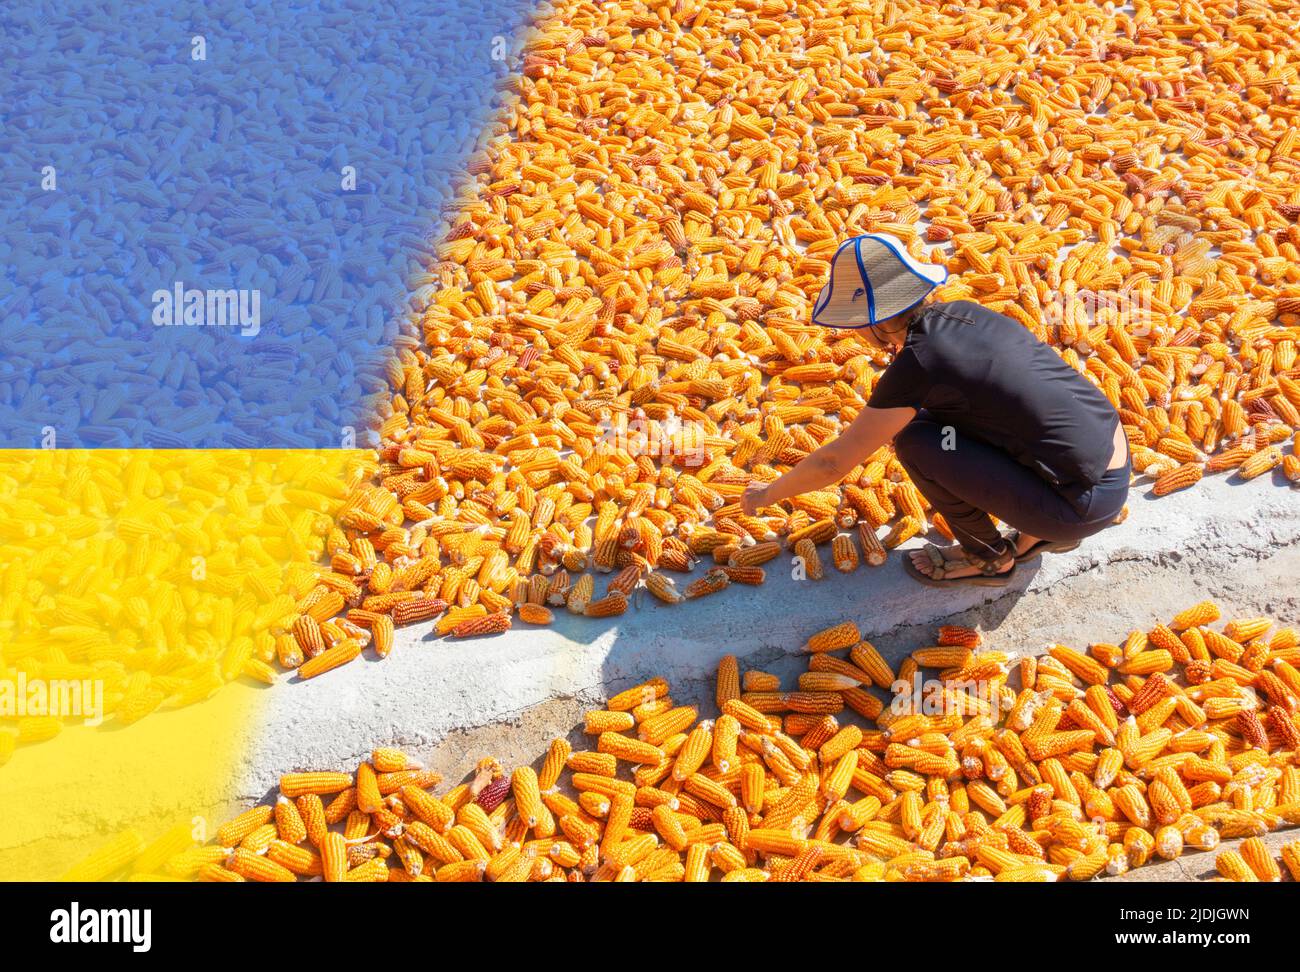 Die Frau, die den Mais trocknet, mit der Flagge der Ukraine überdeckt. Ukraine Russland Krieg, Konflikt, steigende Lebensmittelpreise, Arbeitskräftemangel, Sanktionen...Konzept Stockfoto